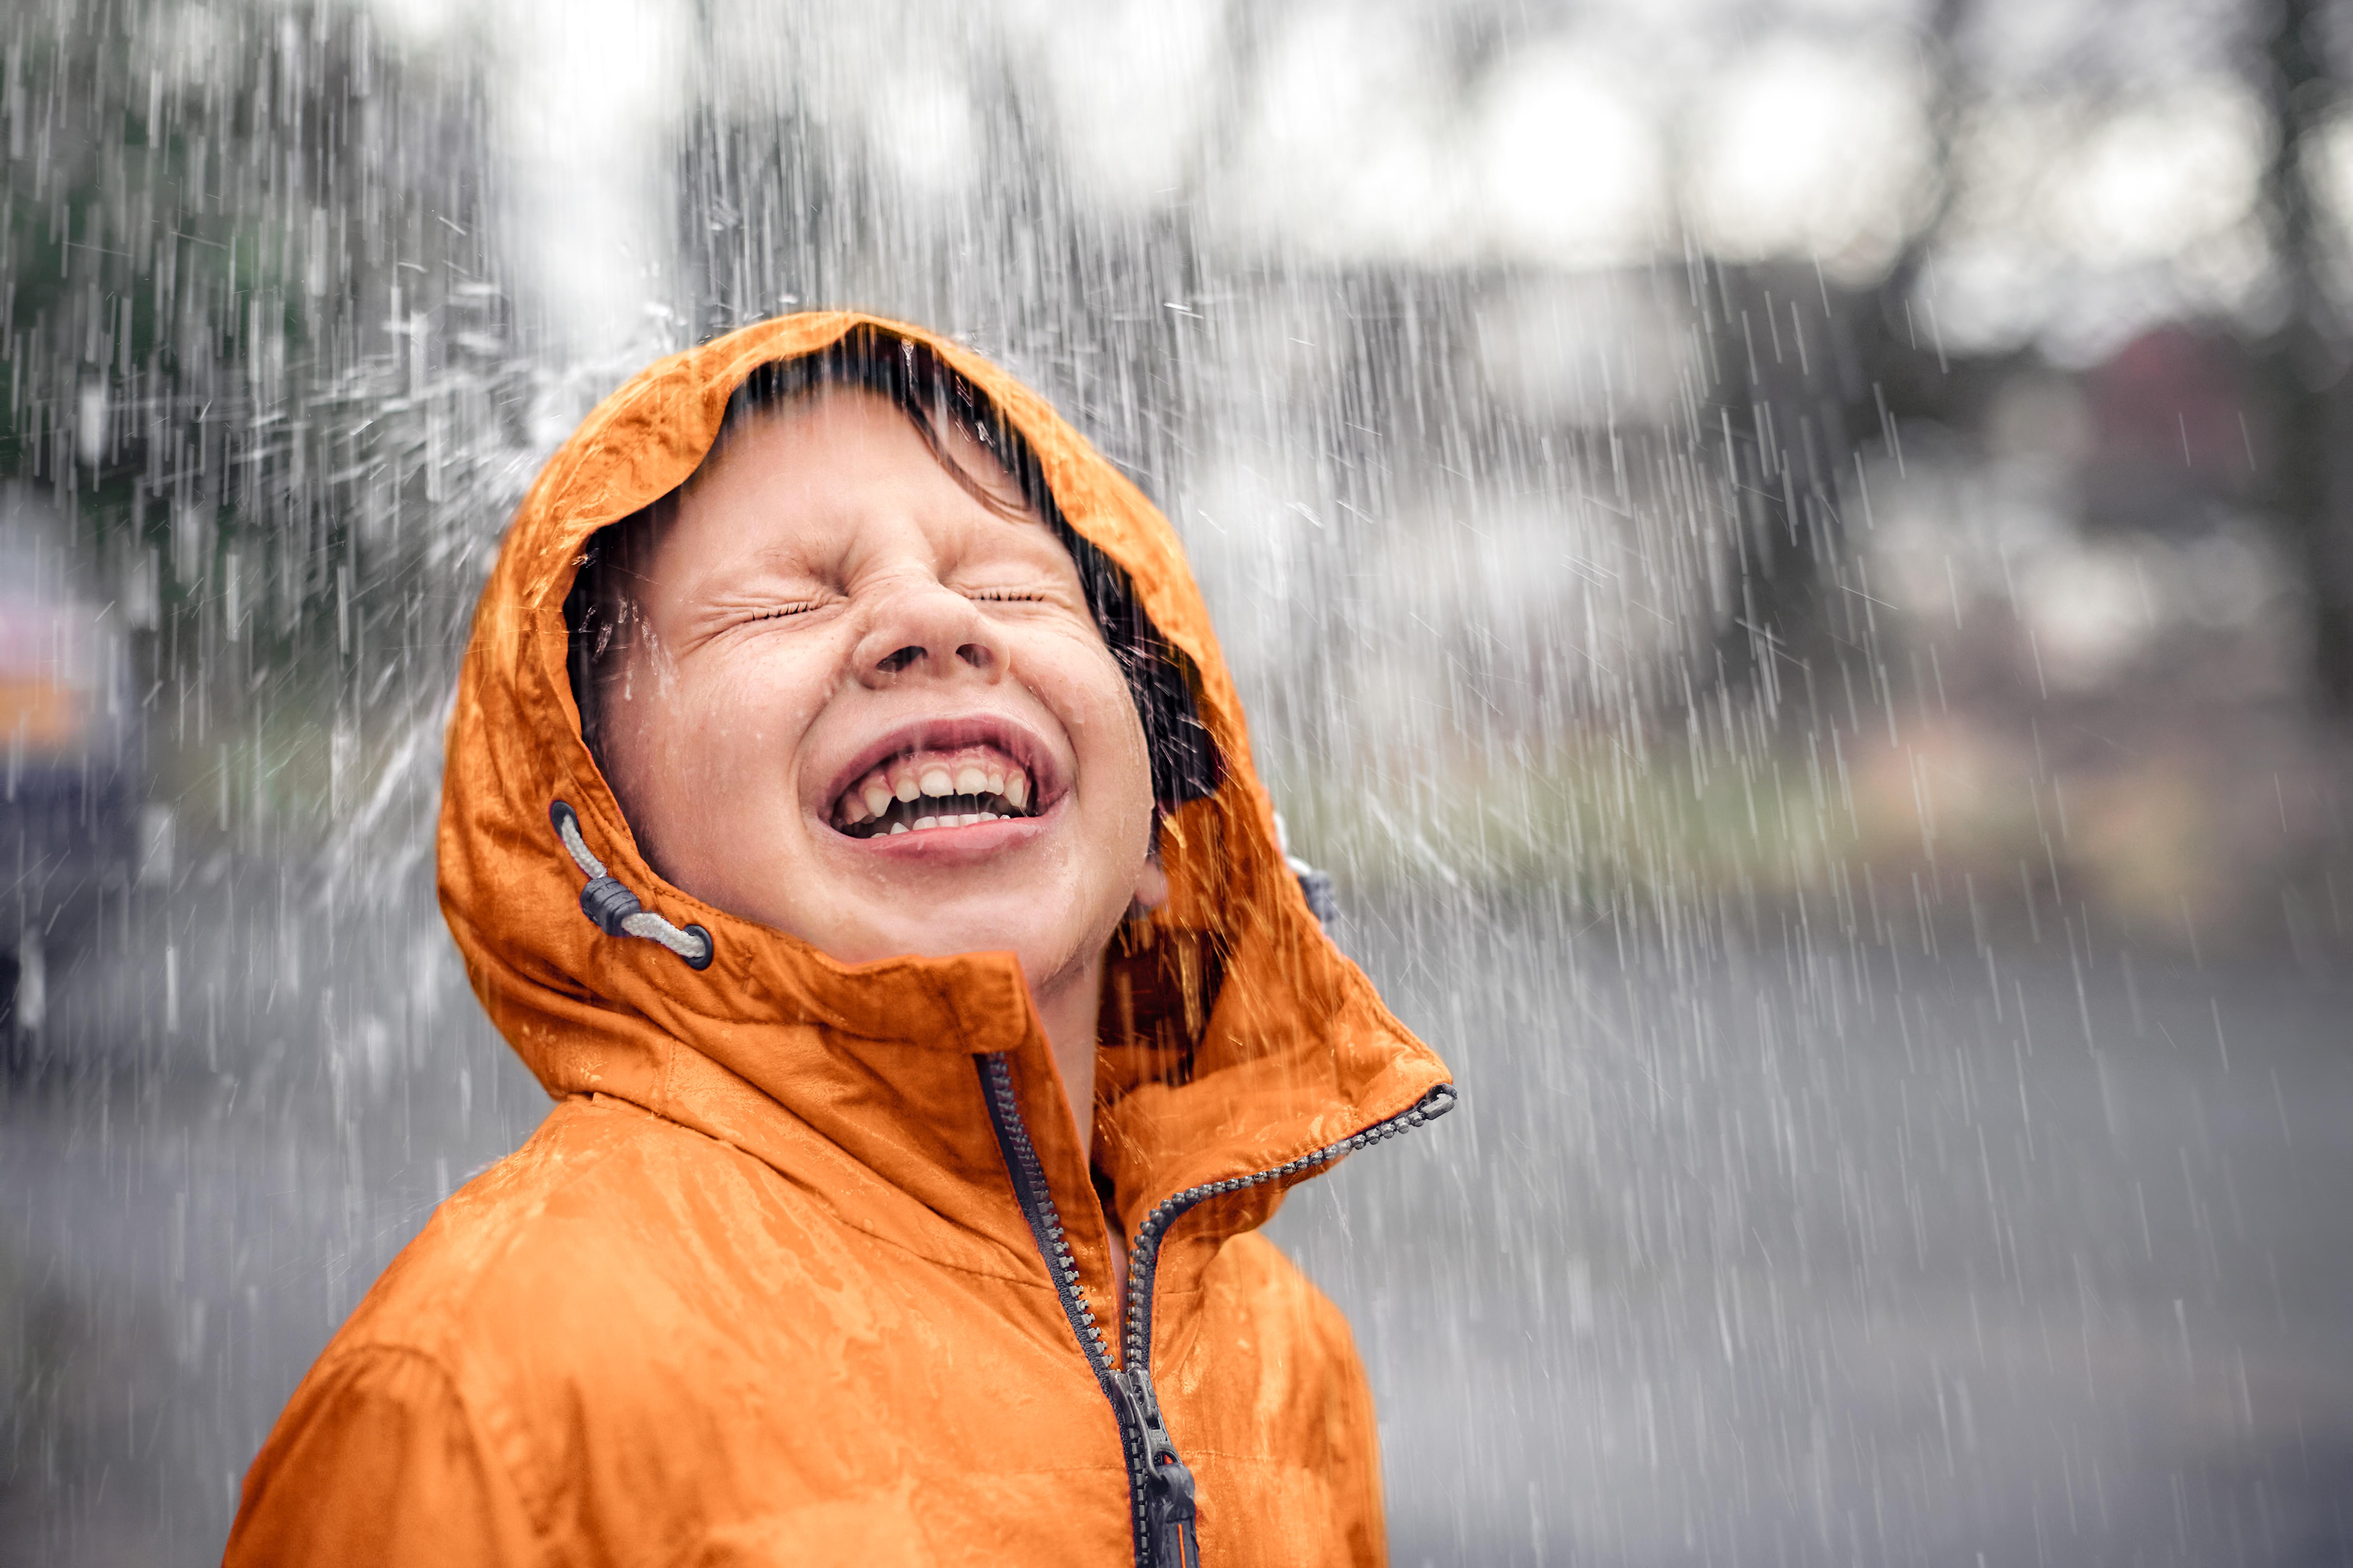  Junge geniesst Regen im Gesicht 